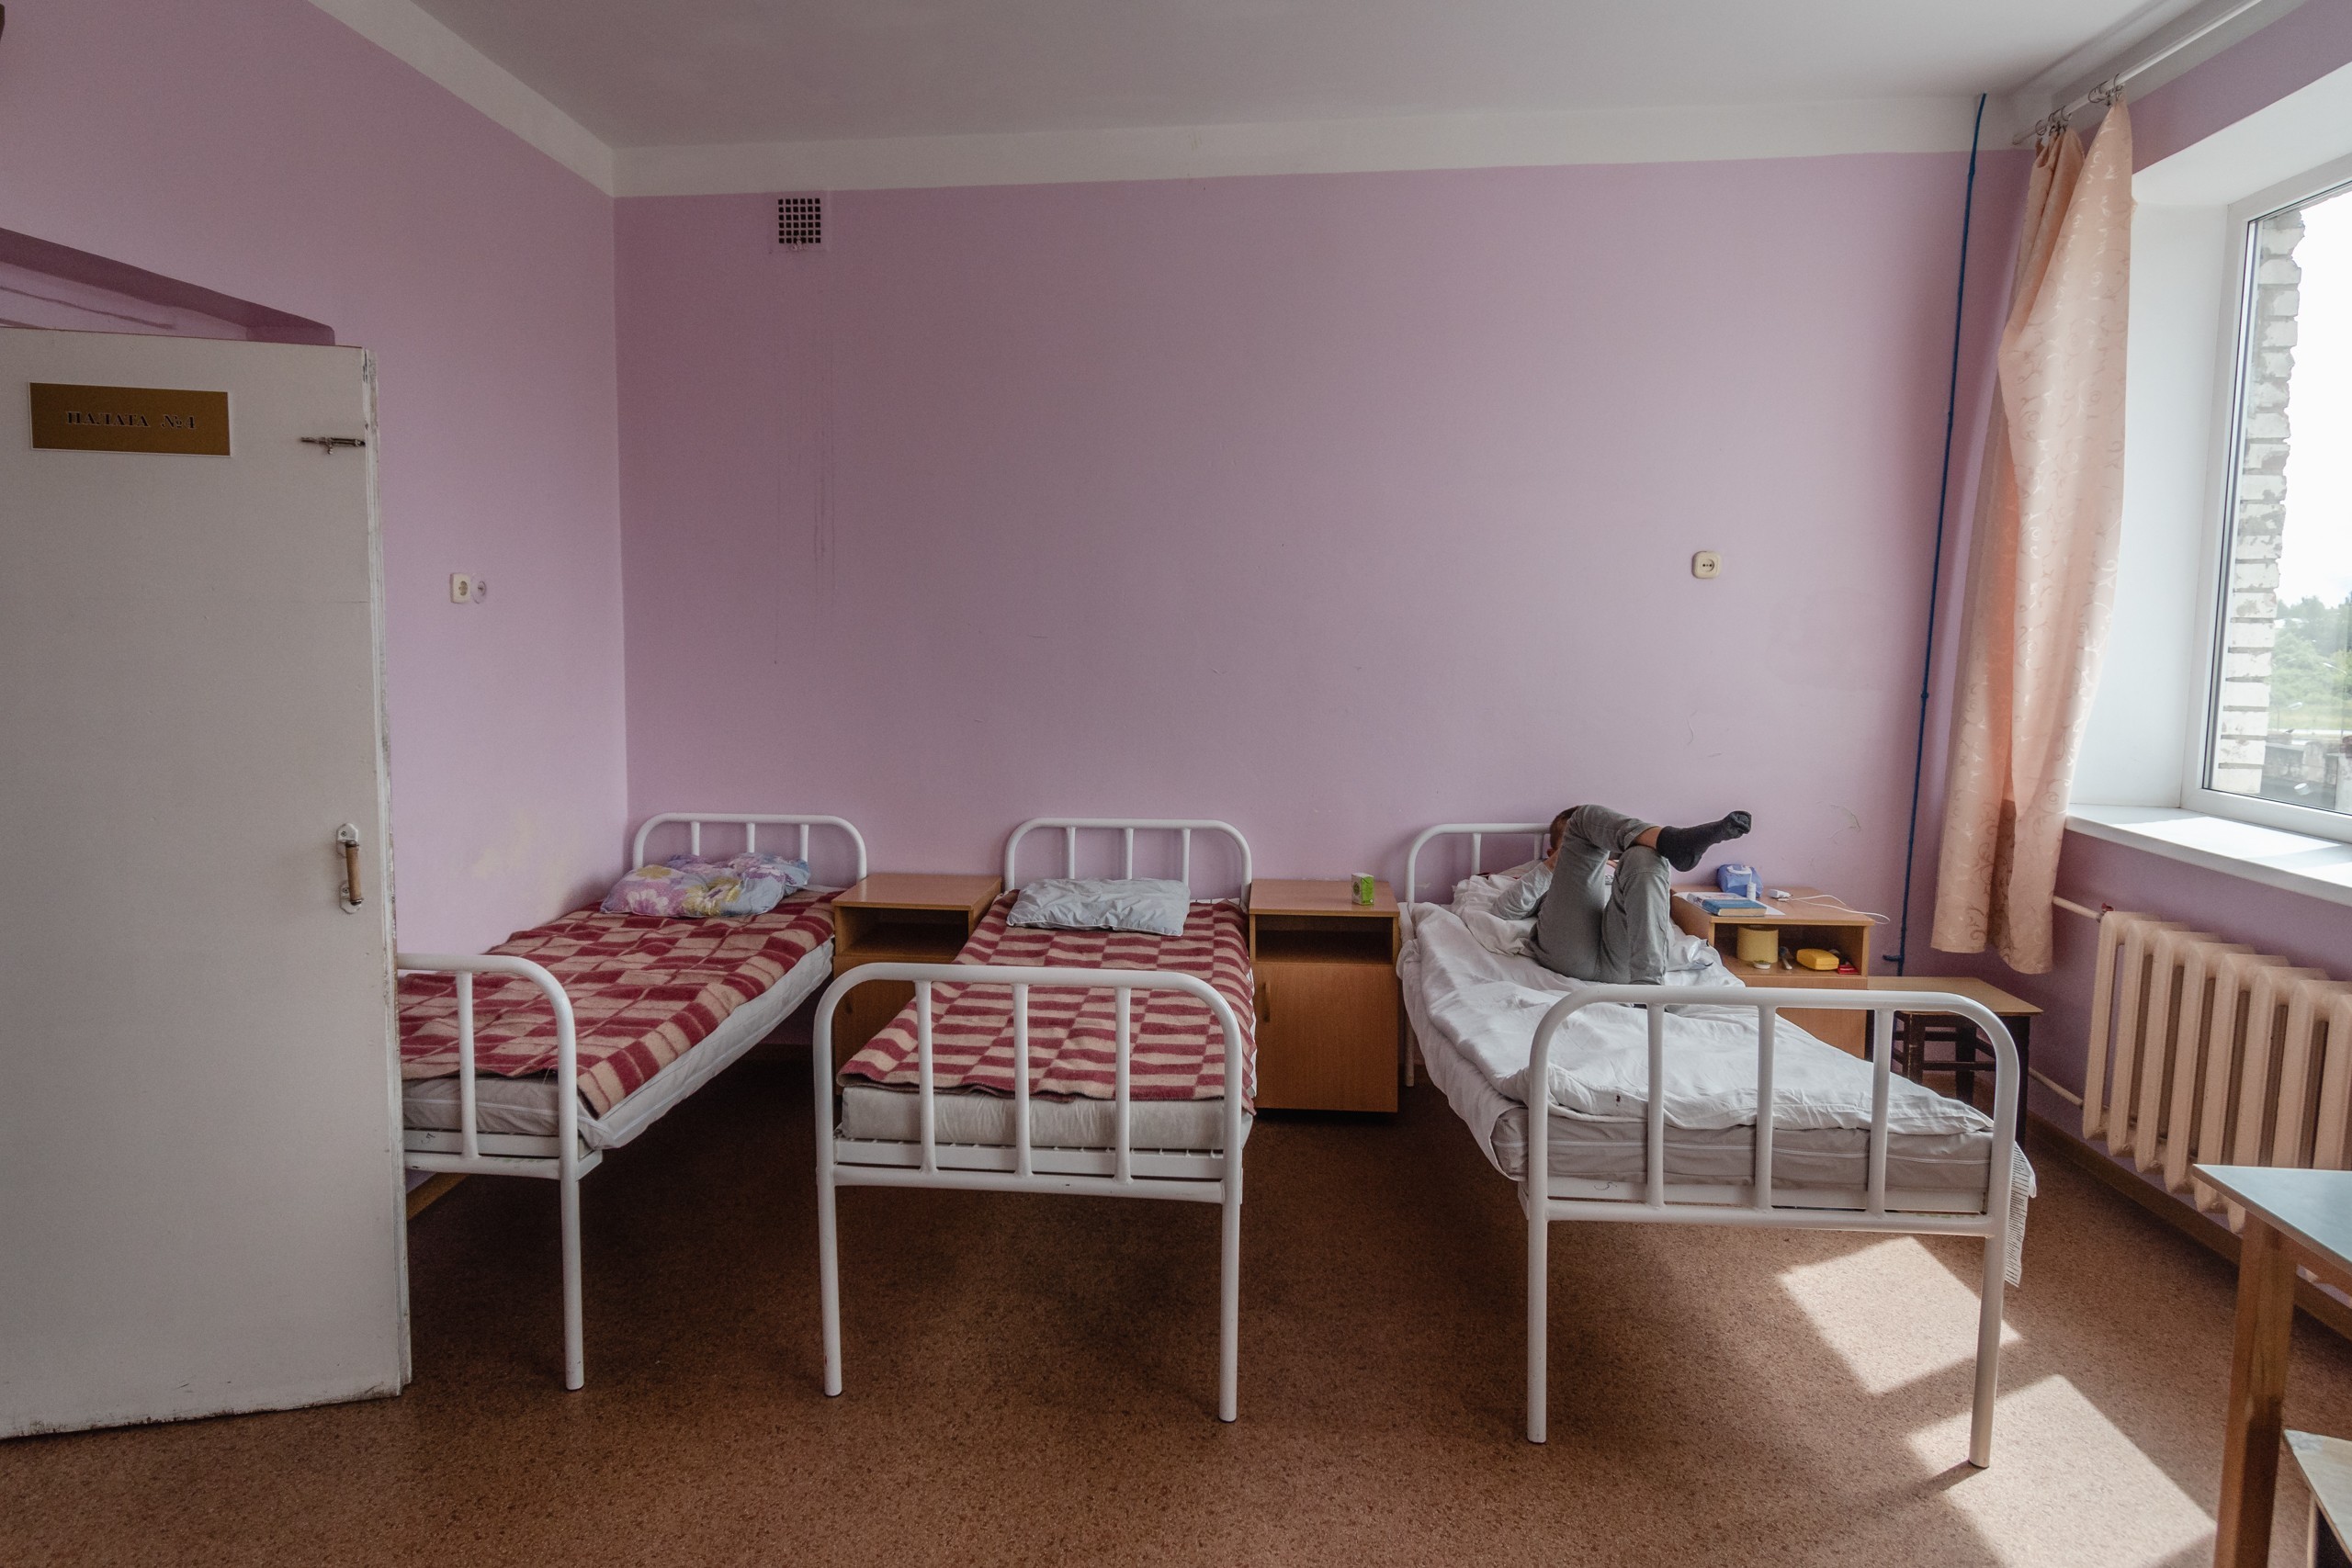 Детские поликлиники в великом новгороде